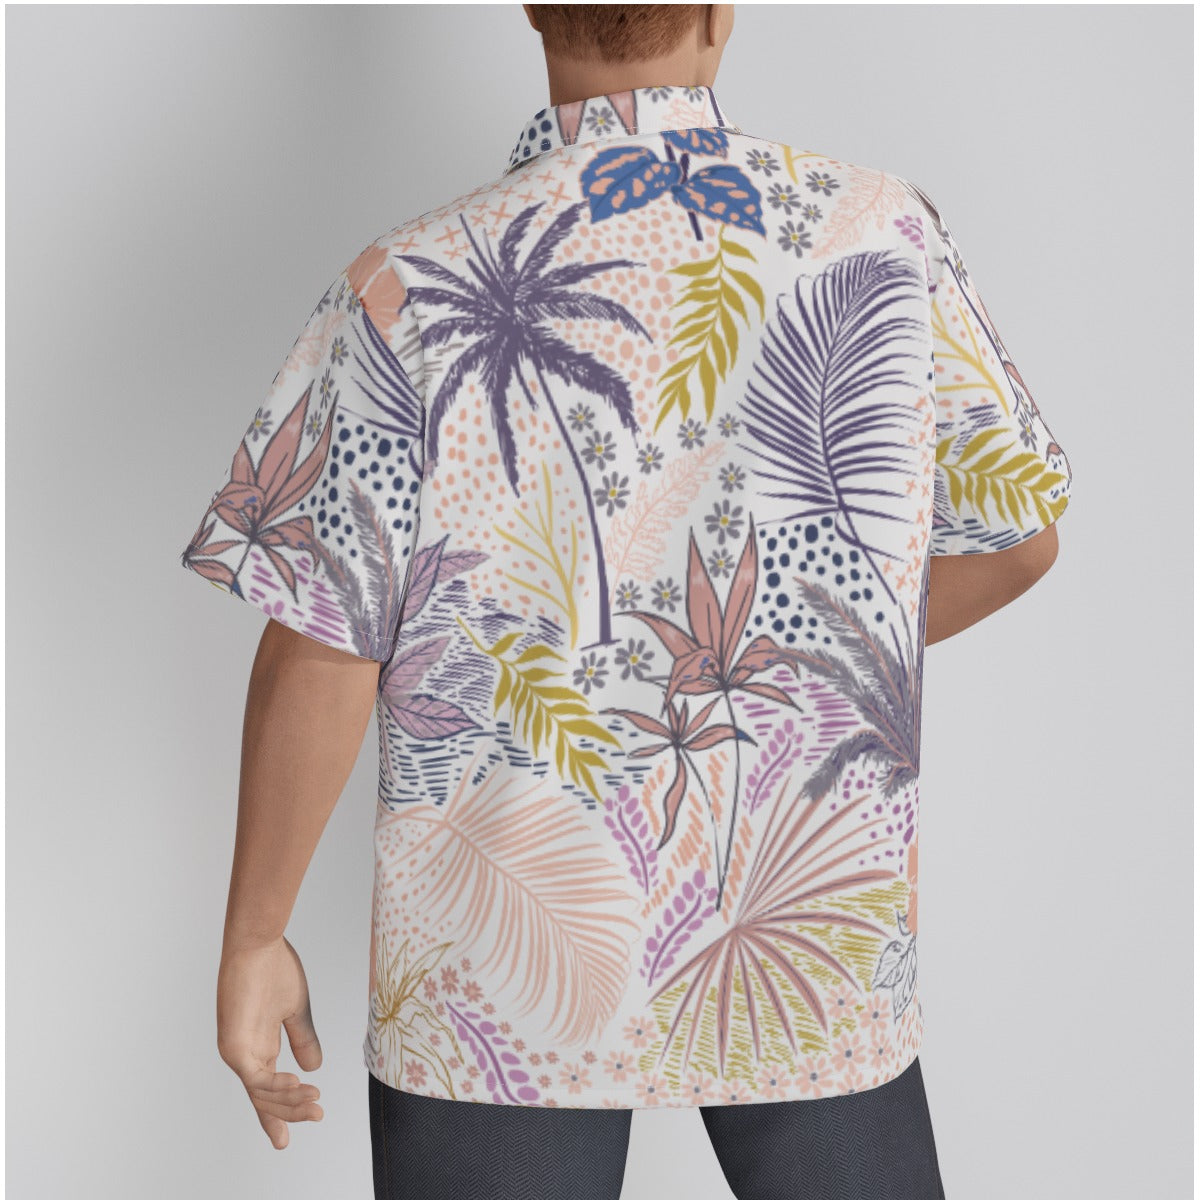 Men's Soft Tropics Comfort Colors Hawaiian Cotton Shirt